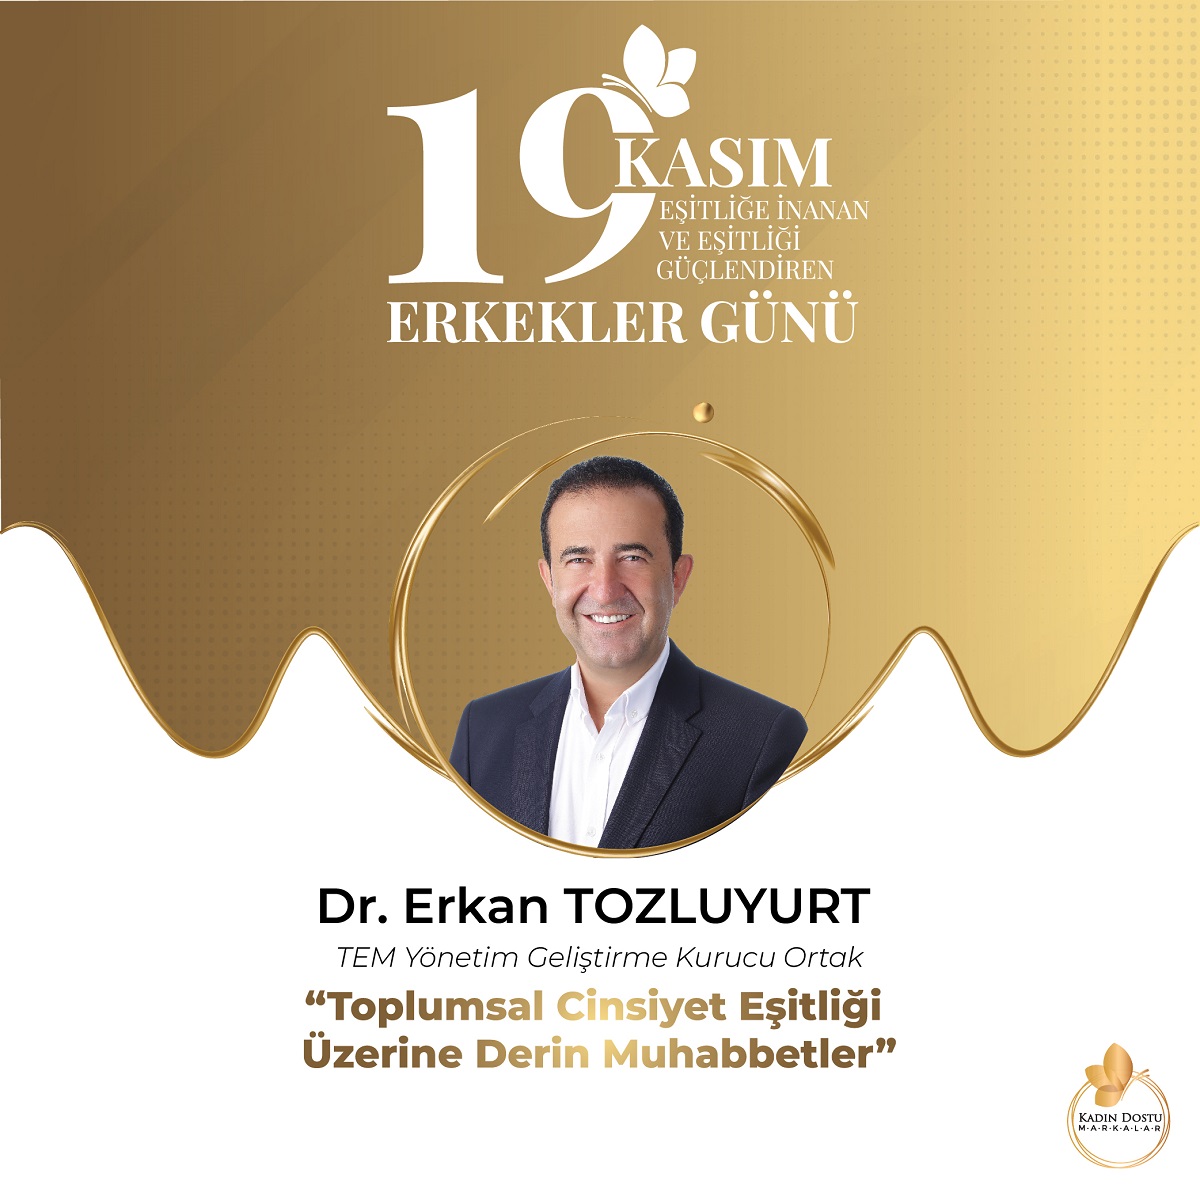 TEM Yönetim Geliştirme Kurucu Ortağı Dr. Erkan TOZLUYURT